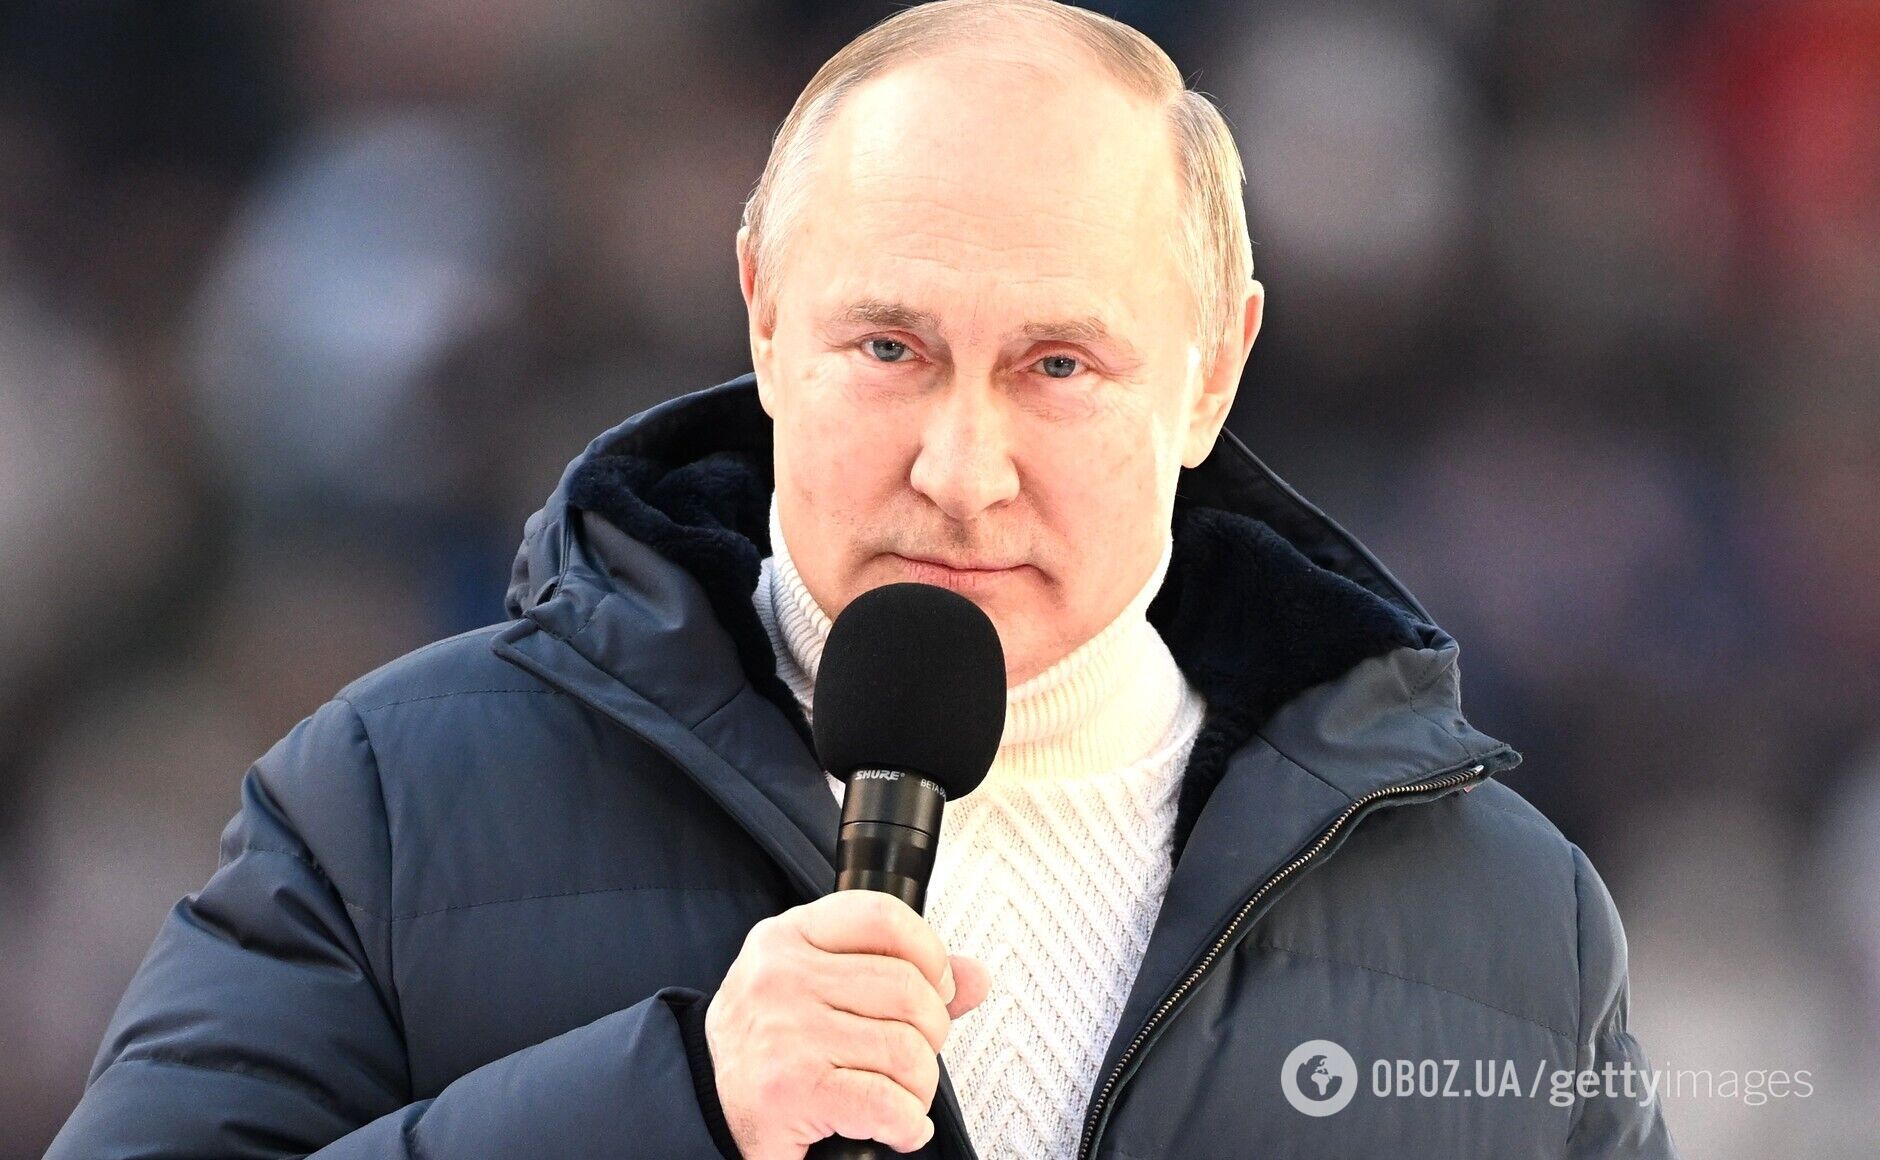 Під час виступу Путіна стався конфуз